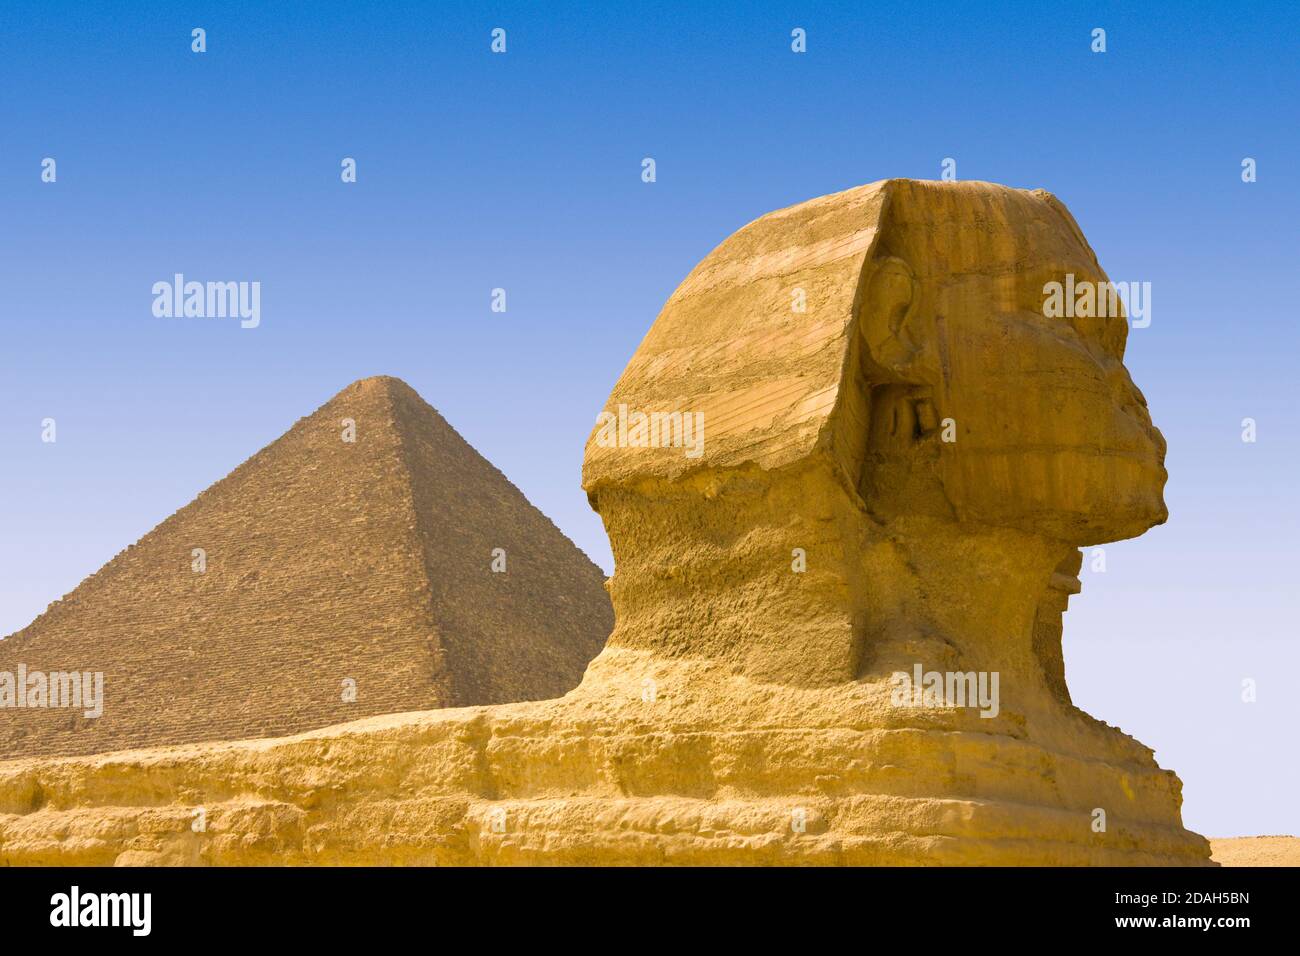 Grand Sphinx de Gizeh et Grande Pyramide de Gizeh, site classé au patrimoine mondial de l'UNESCO, Gizeh, gouvernorat du Caire, Égypte Banque D'Images